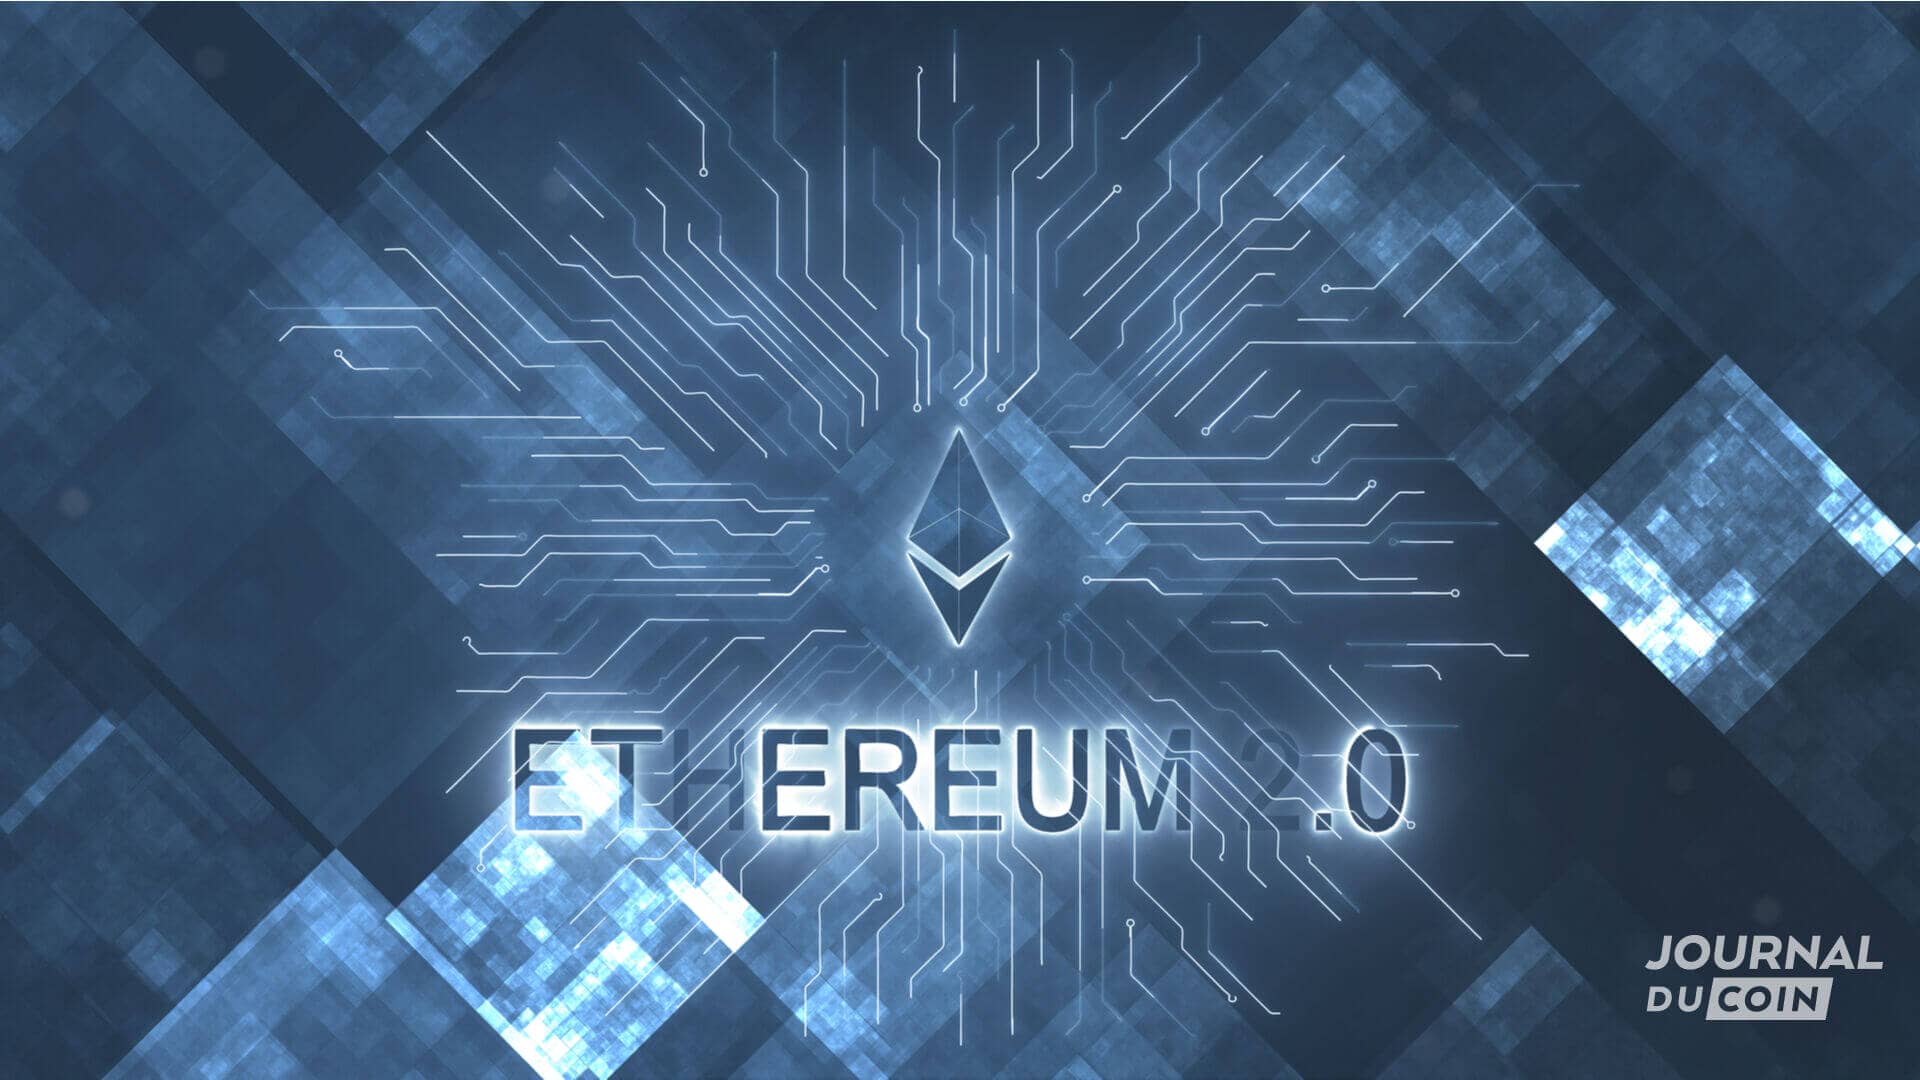 Vue symbolique d'Ethereum 2.0, désormais appelé The Merge.